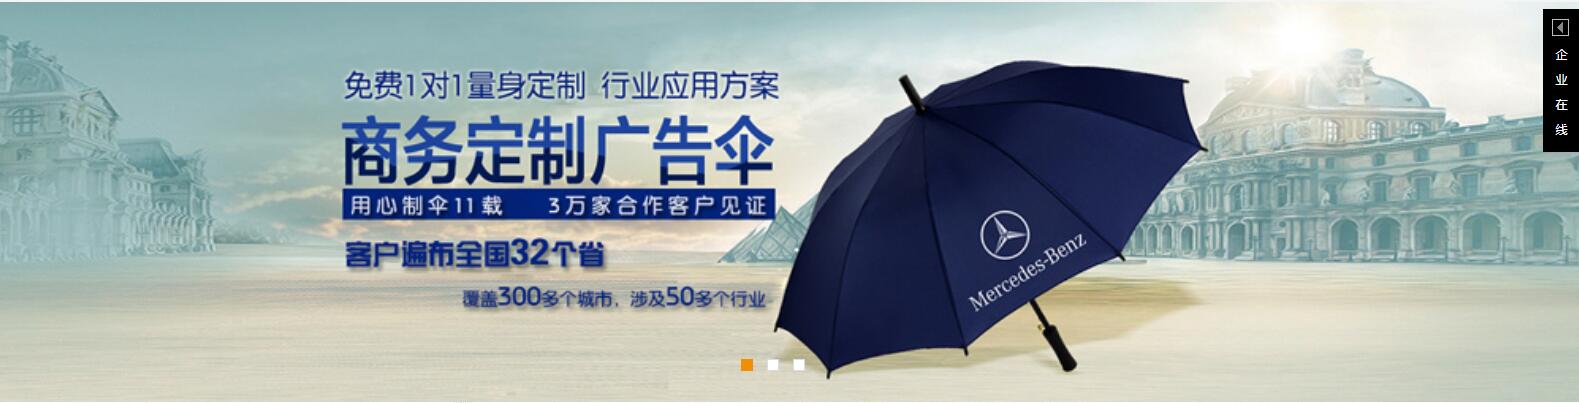 西藏太阳伞厂定做西藏广告太阳伞